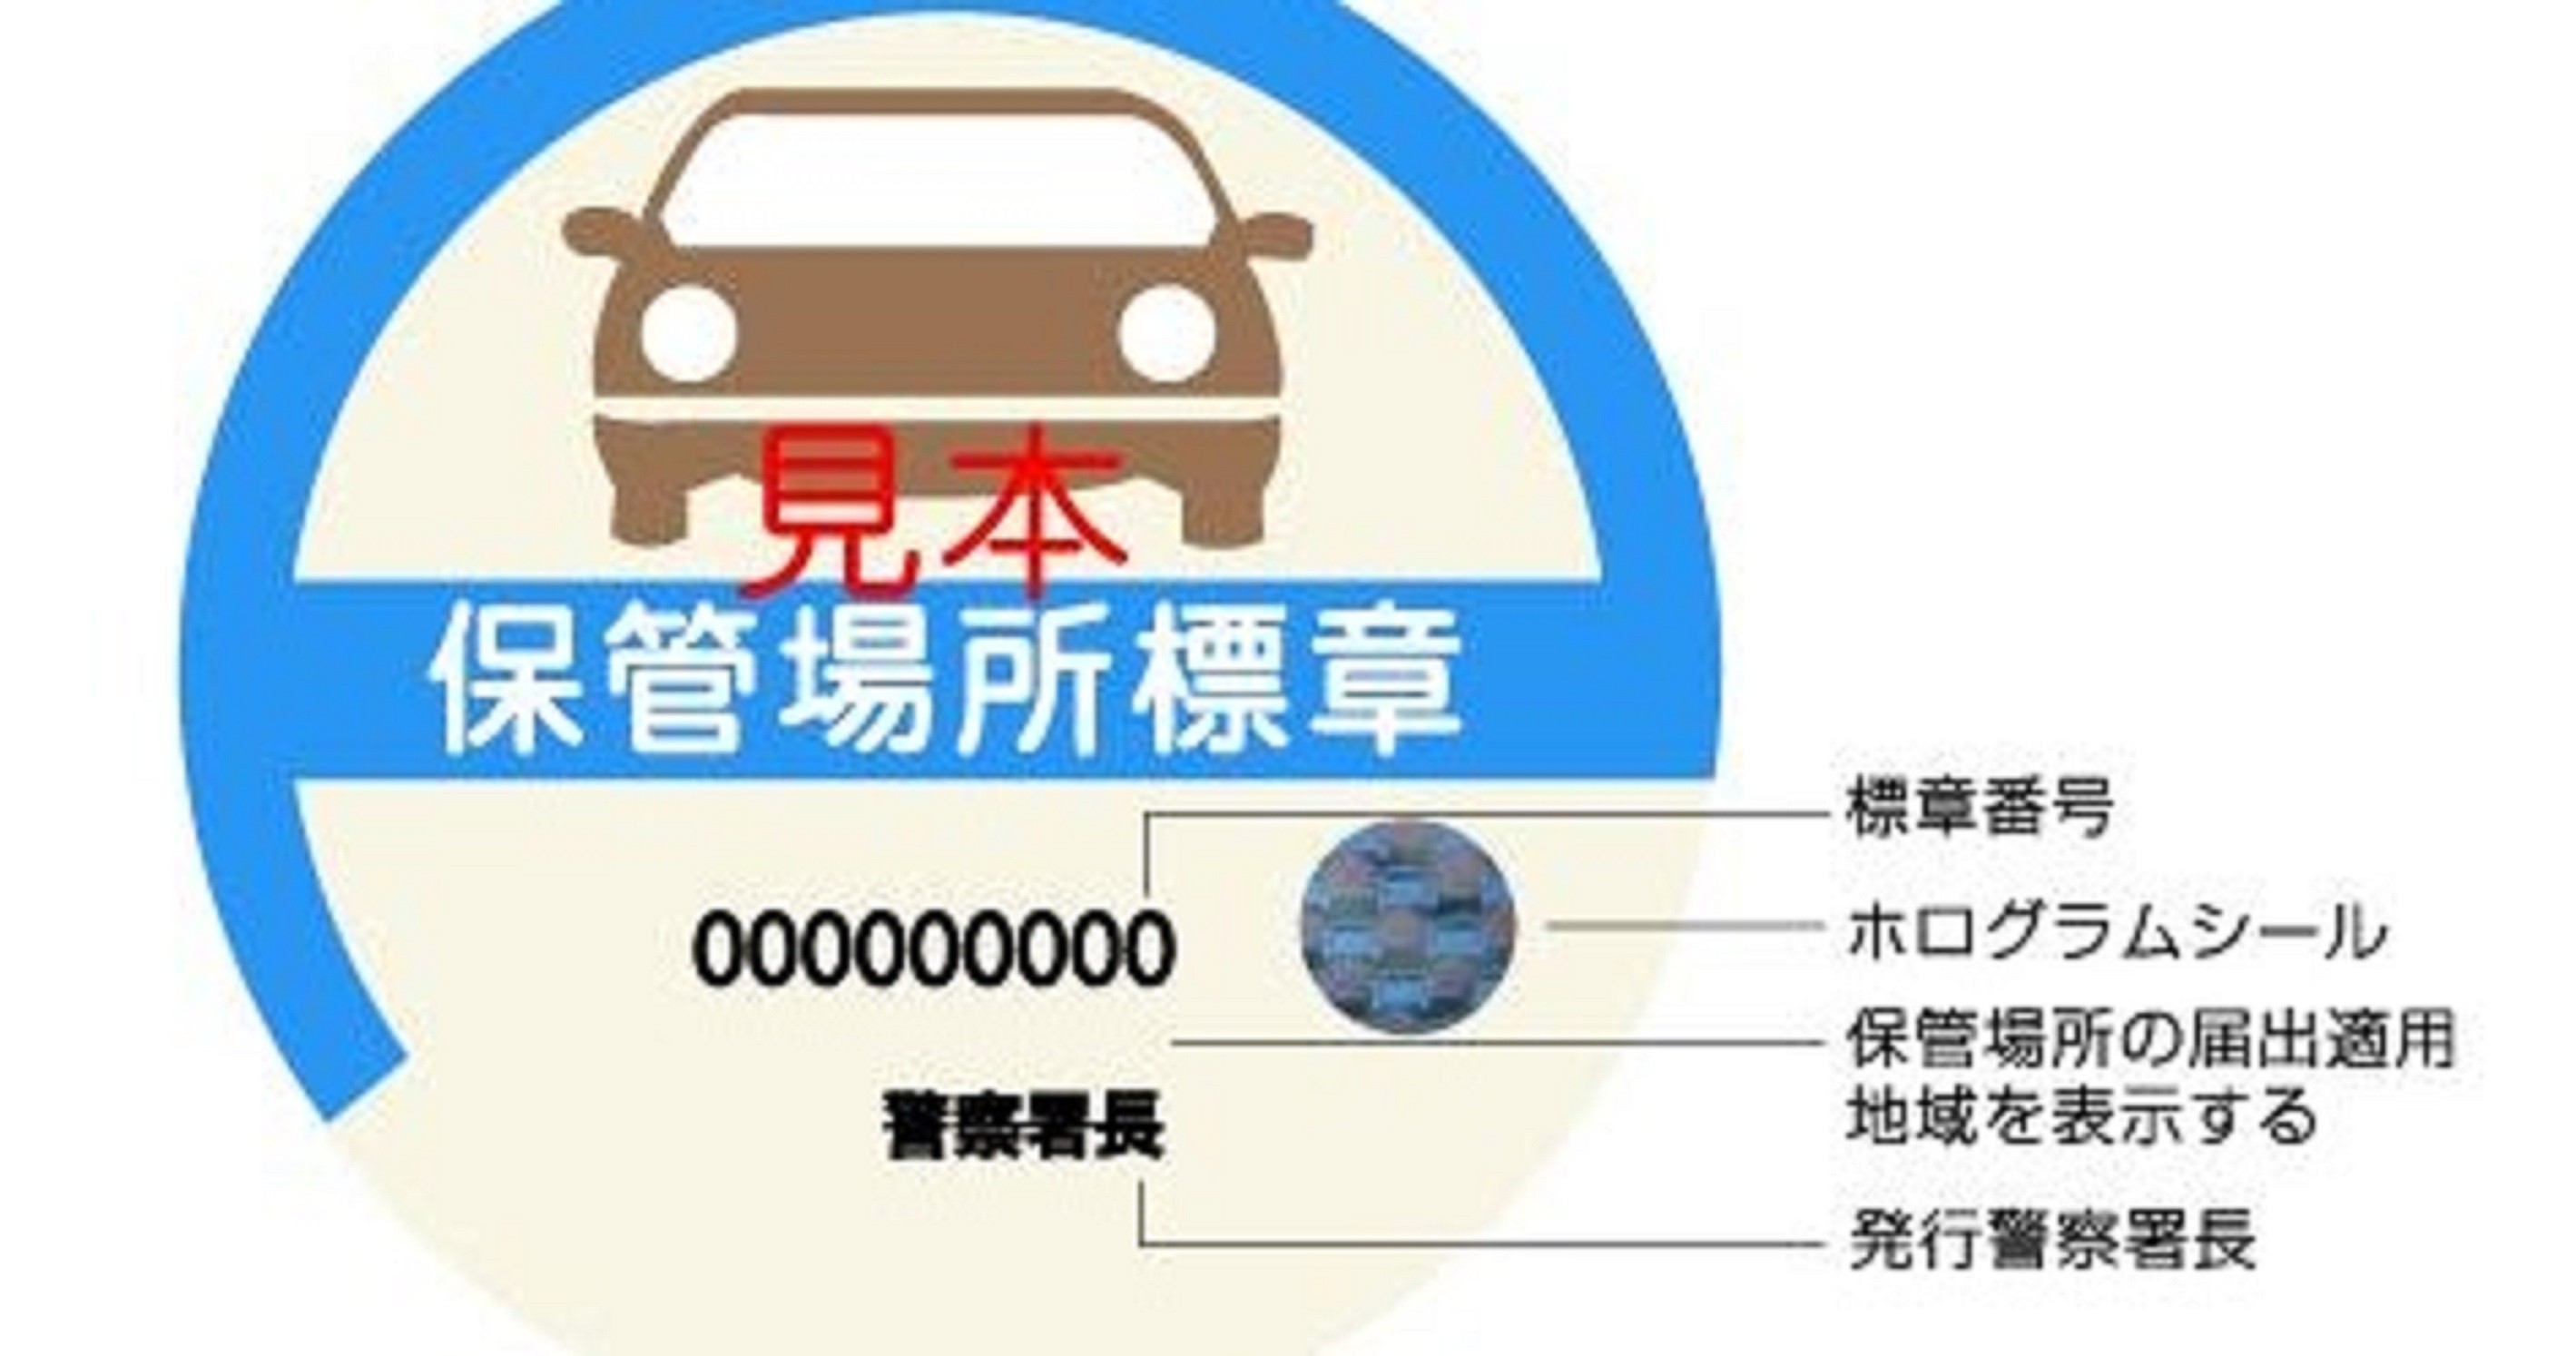 Người dân Nhật Bản phải có chỗ chỗ đậu xe trước khi mua xe